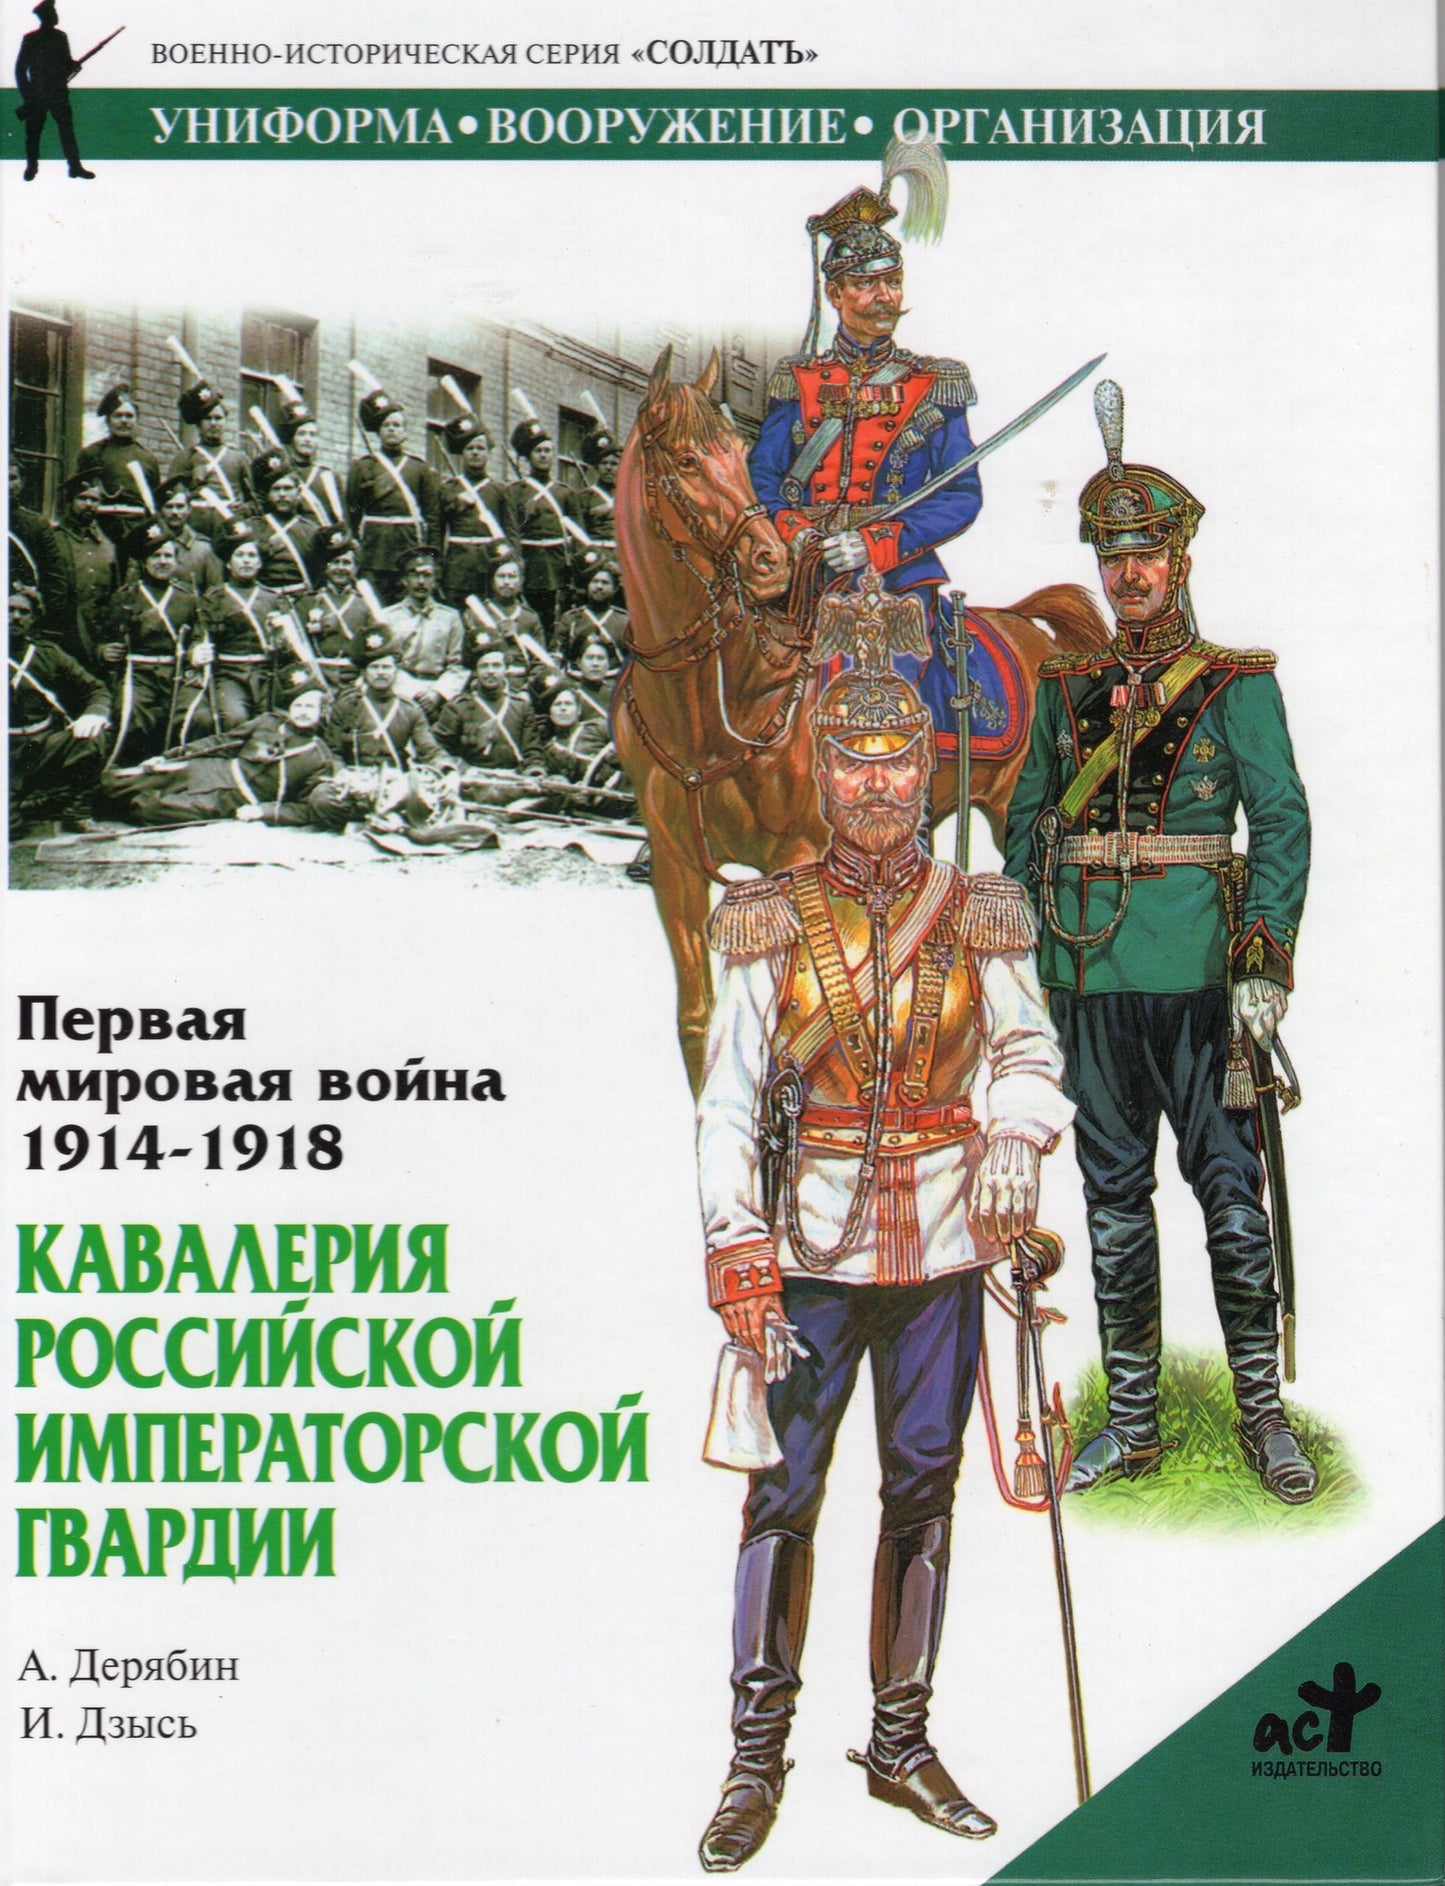 Первая мировая война 1914 - 1918: Кавалерия Российской императорской гвардии